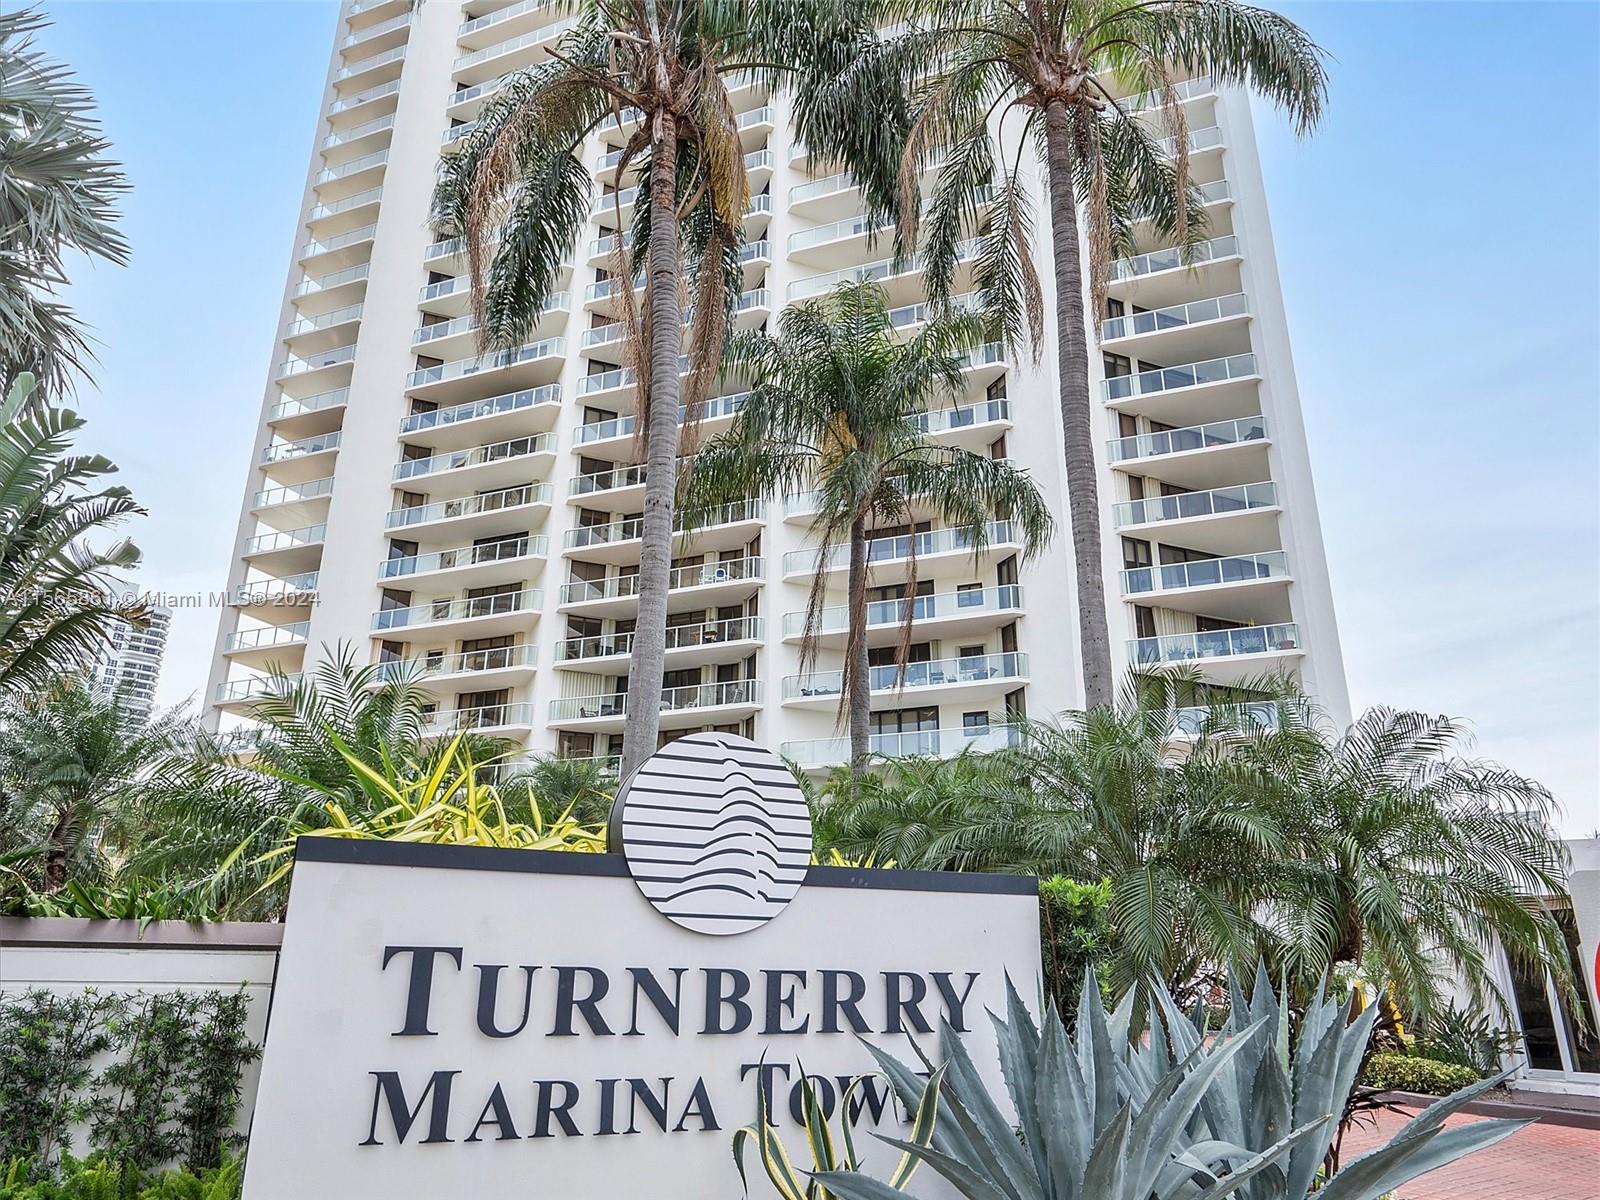 19500 Turnberry Way 11E, Aventura, Miami-Dade County, Florida - 2 Bedrooms  
3 Bathrooms - 